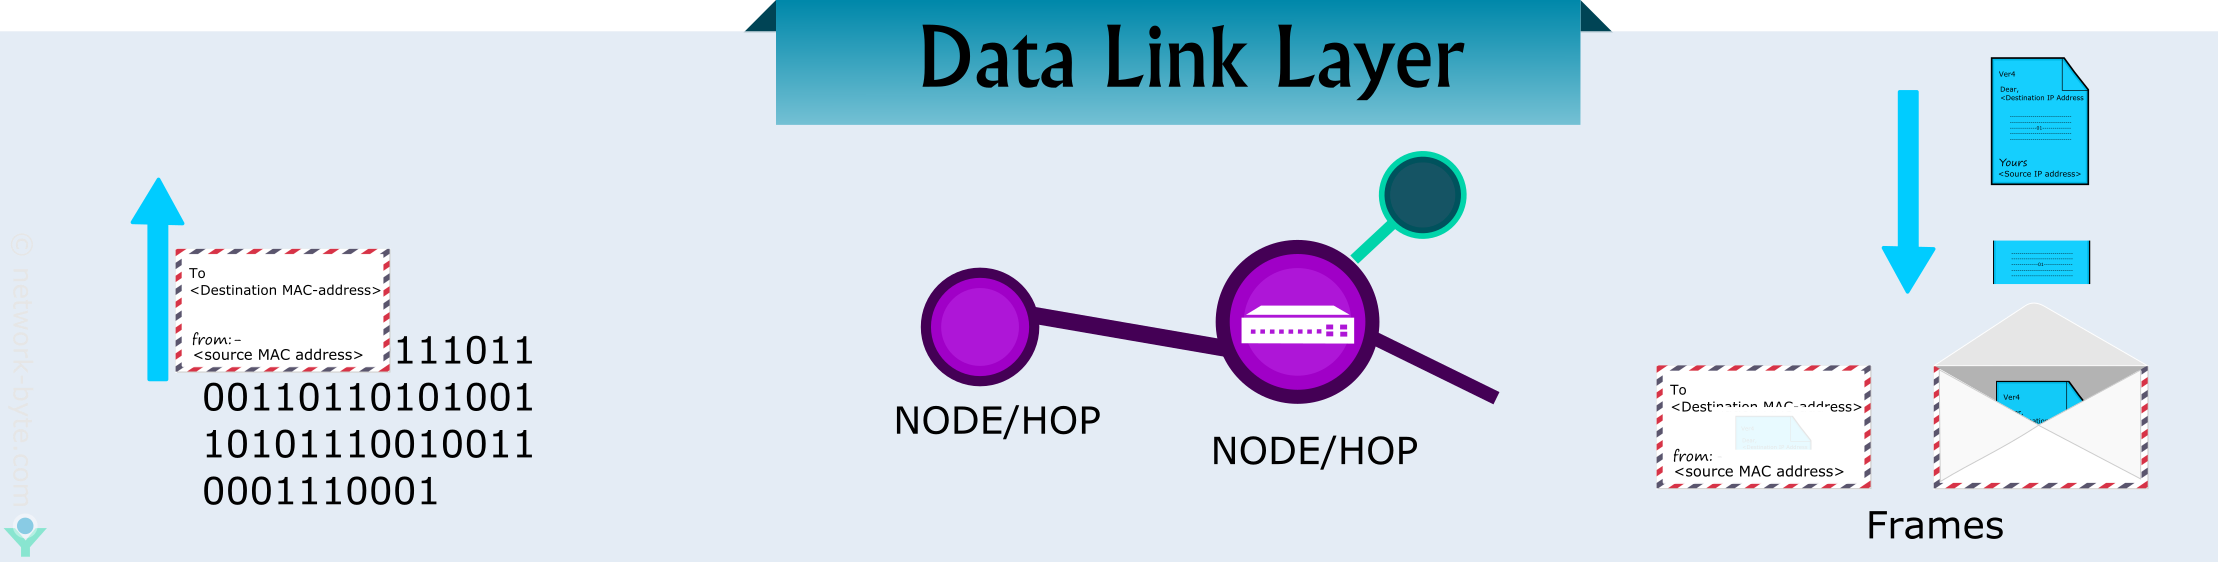 data link layer in osi model